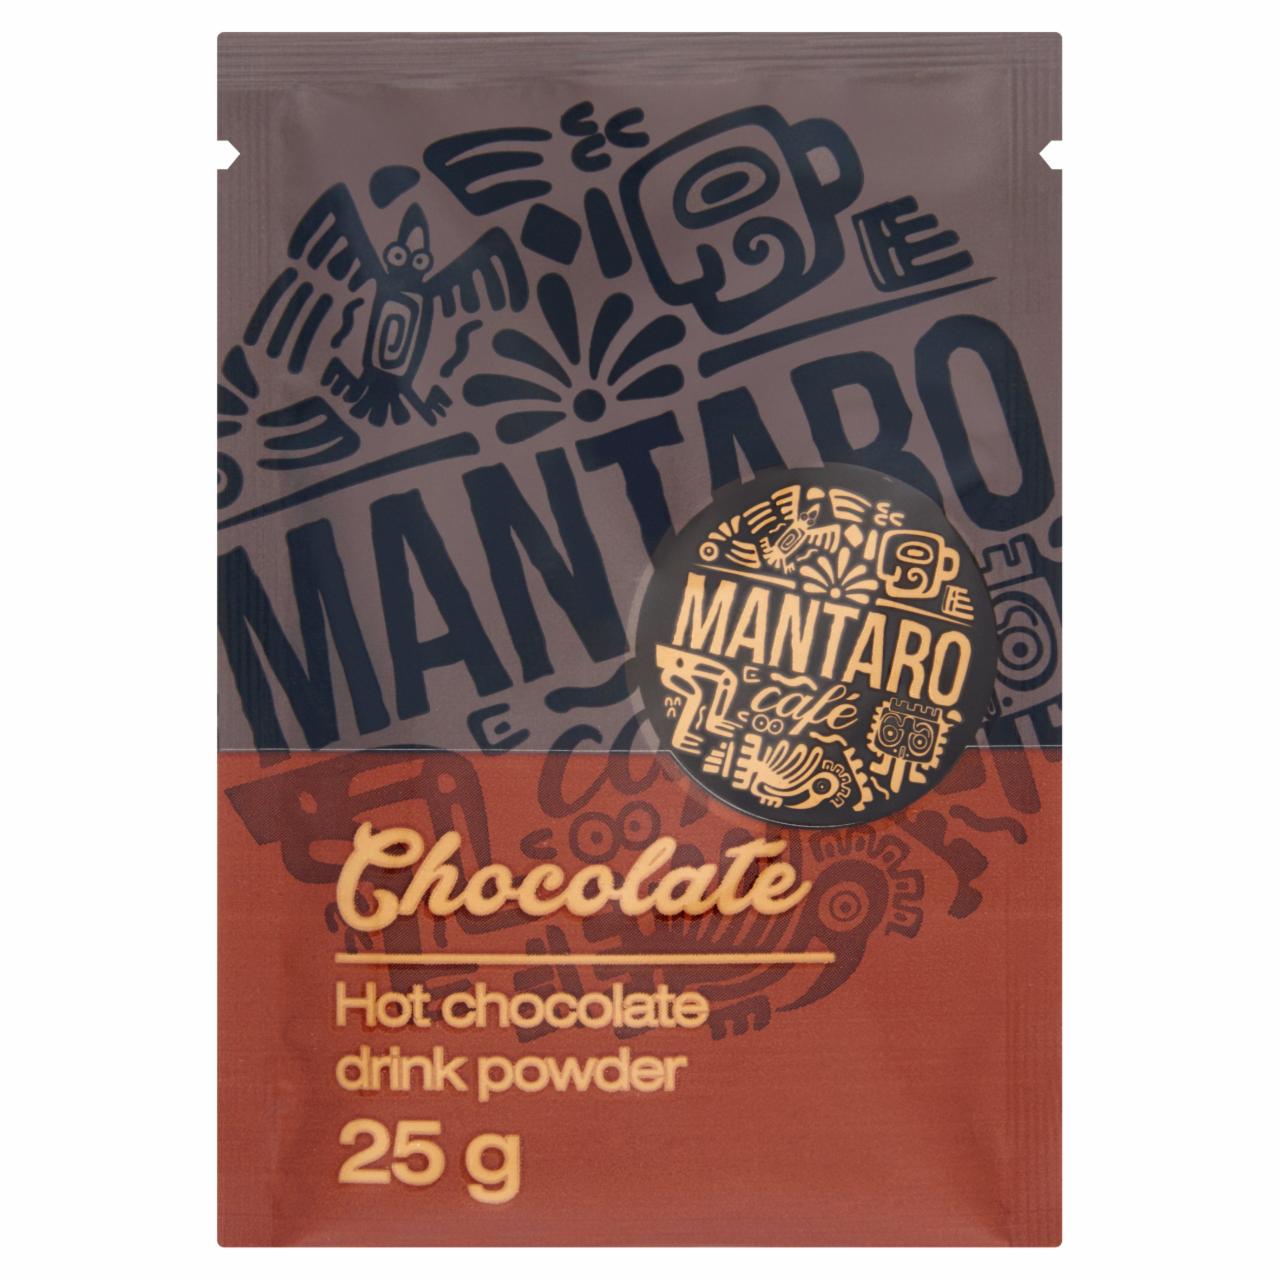 Képek - Mantaro Café Chocolate forró csokoládé italpor 25 g